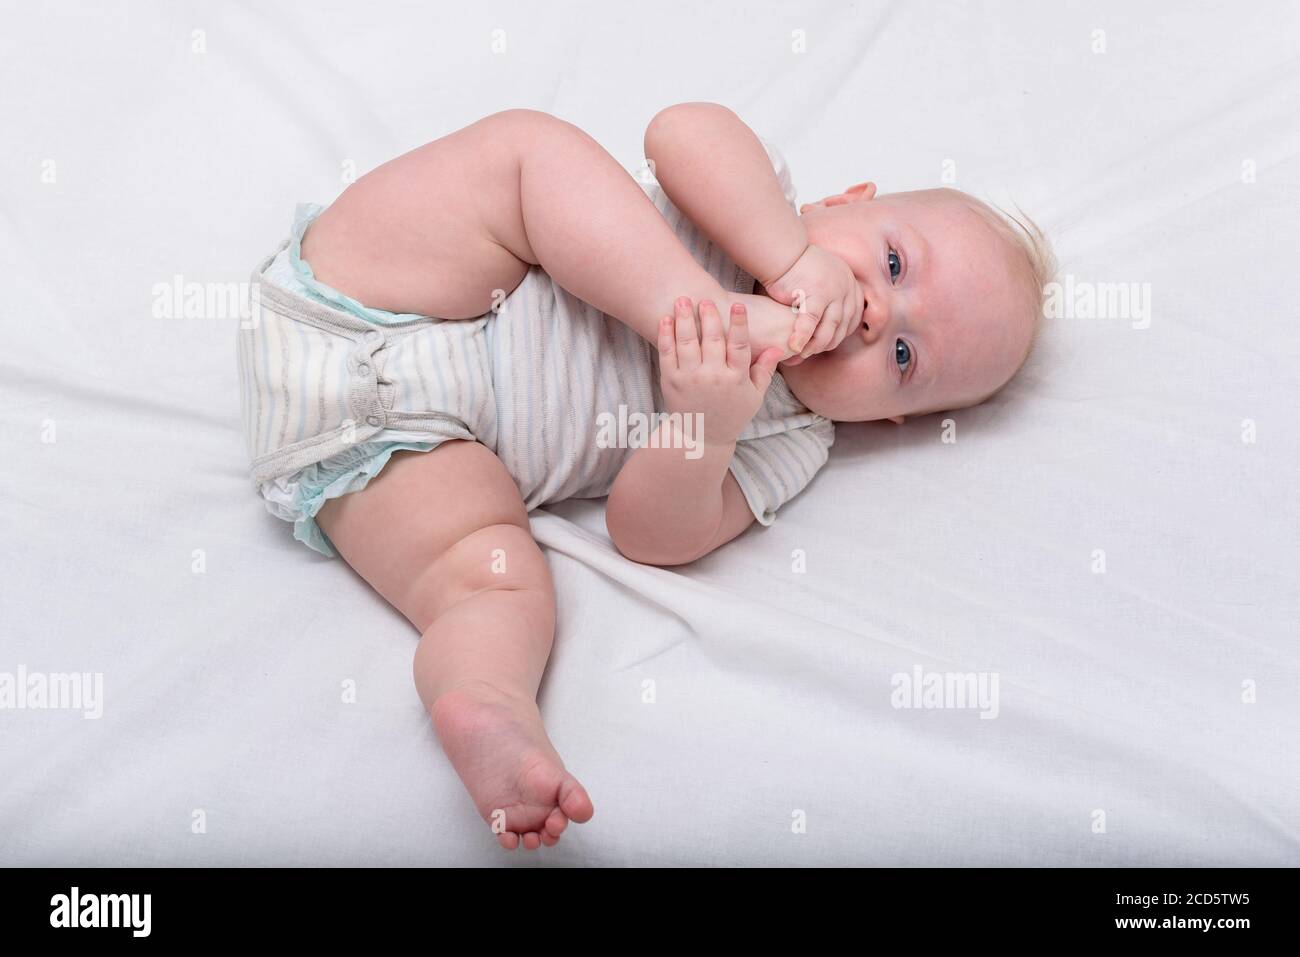 Kleines Baby knabbert seinen Fuß auf weißem Bett. Niedliches 3 Monate Baby.  Gymnastik für das Neugeborene Stockfotografie - Alamy